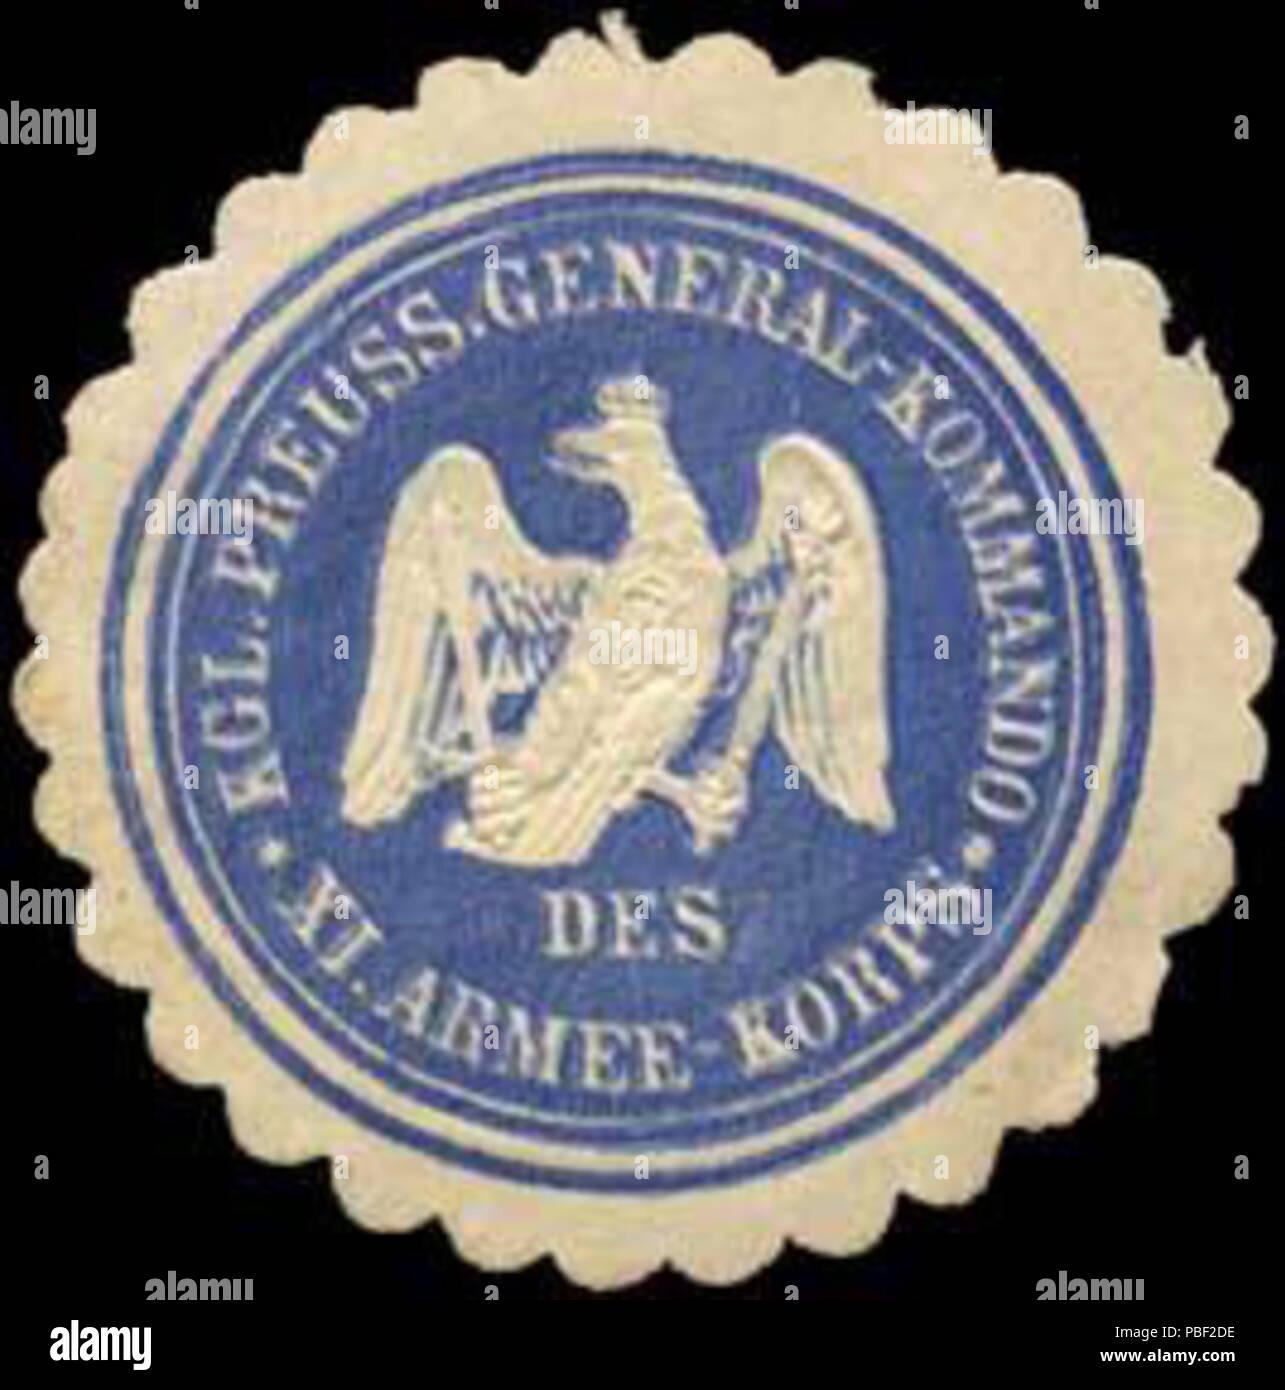 Alte Briefverschlussmarke aus Papier, welche seit ca. 1850 von Behoerden, Anwaelten, Notaren und Firmen zum verschliessen der Post verwendet wurde. 1458 Siegelmarke Königlich Preussisches General - Kommando des XI. Armee - Korps W0249963 Stock Photo